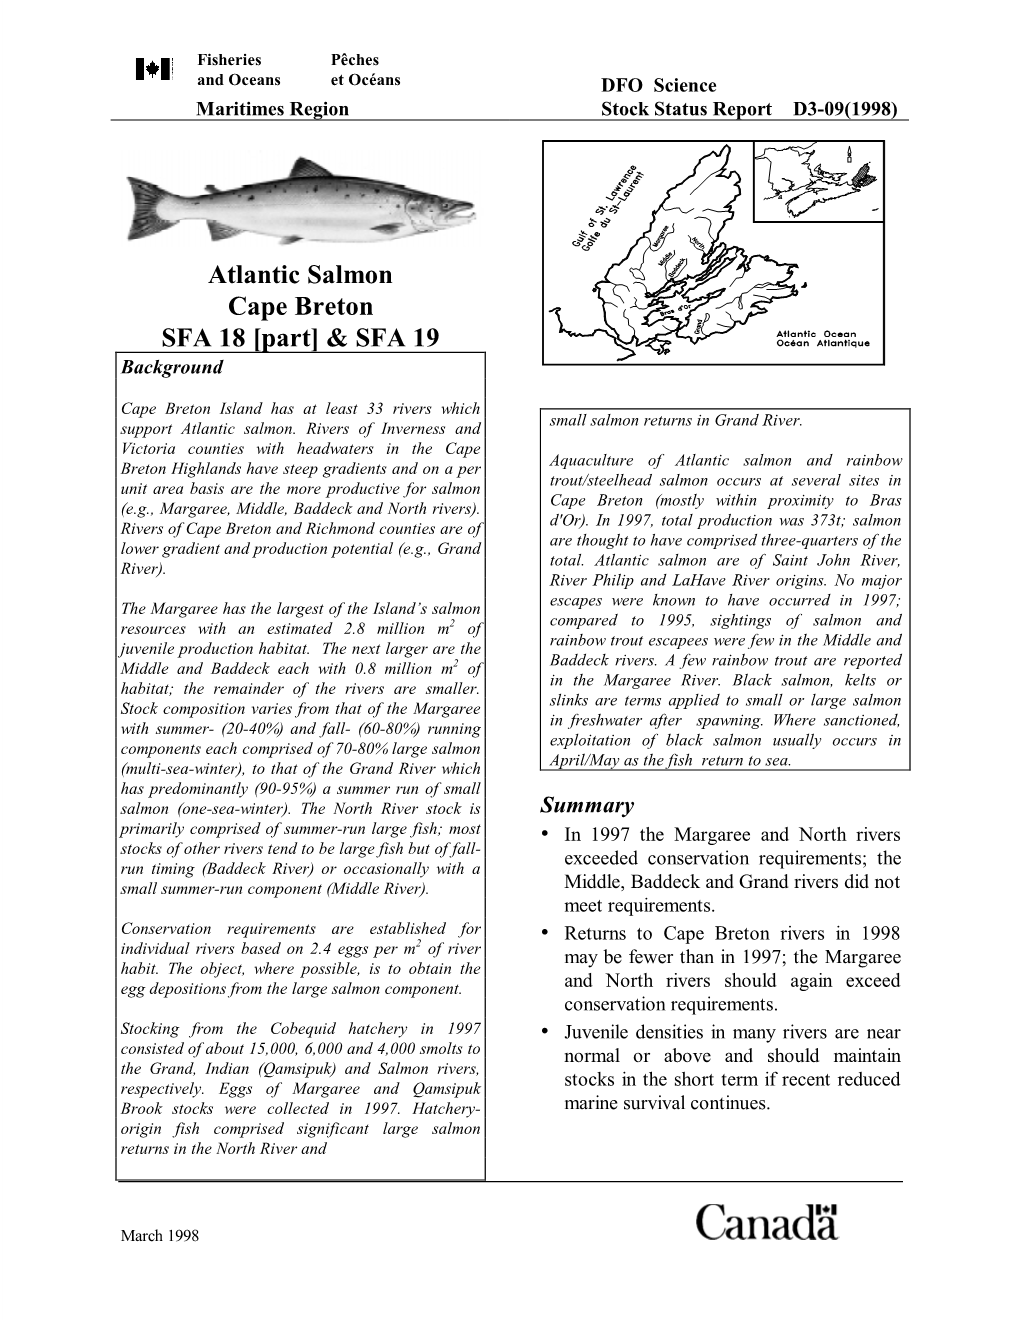 Atlantic Salmon SFA 18